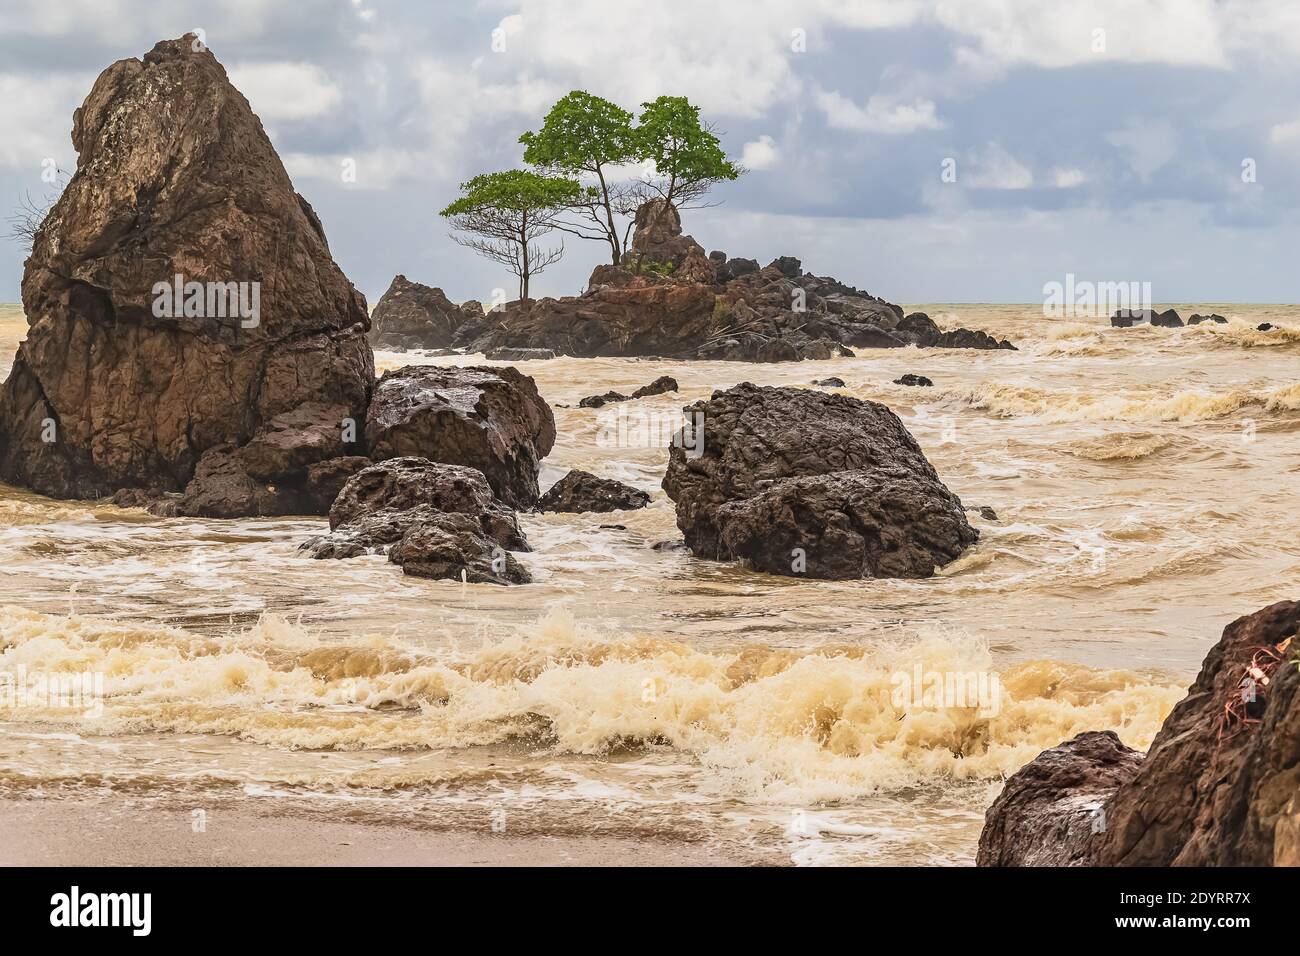 Ghana plage avec rochers et mer d'or situé dans Axim L'Afrique de l'Ouest a également appelé la côte d'or Banque D'Images